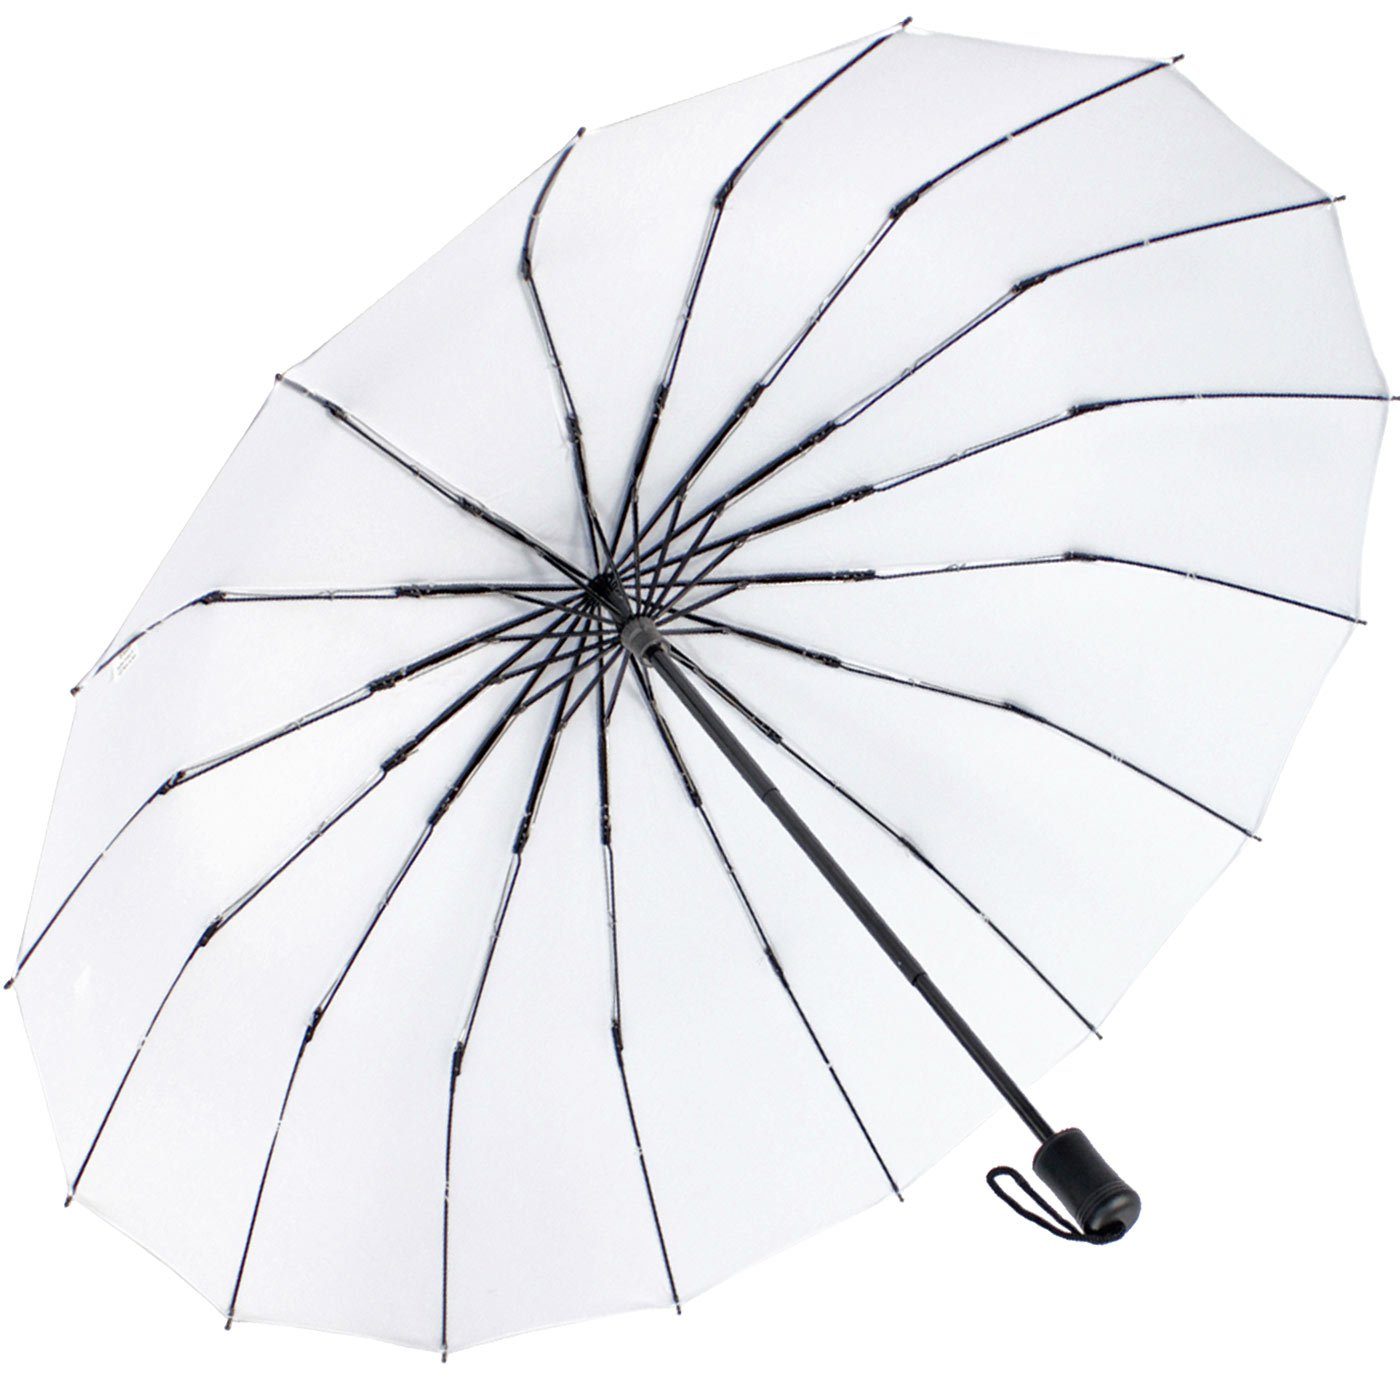 und stabil extra iX-brella mit auffällig und 16 weiß farbenfroh, Taschenregenschirm extravagant Streben Mini